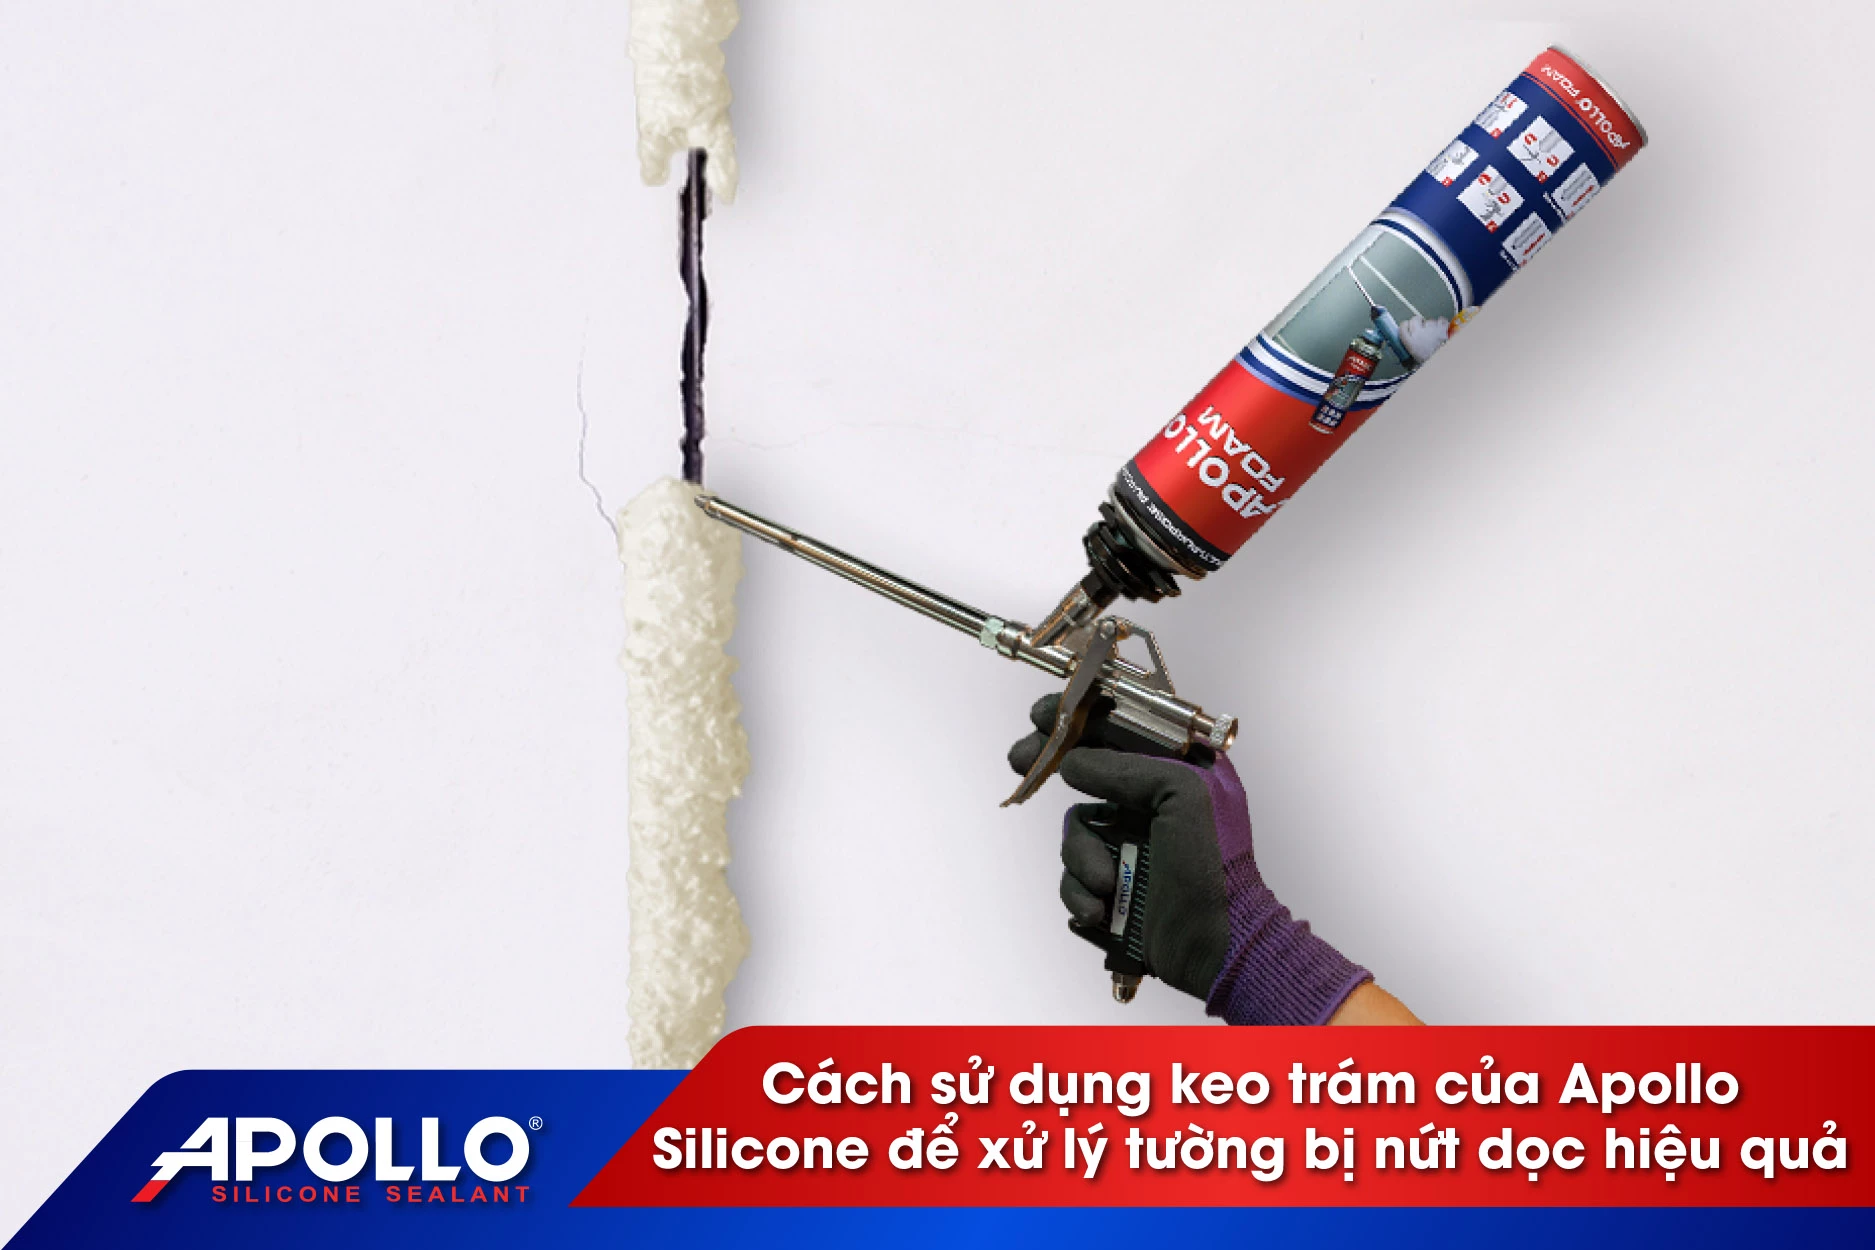 Cách sử dụng keo trám của Apollo Silicone để xử lý tường bị nứt dọc hiệu quả